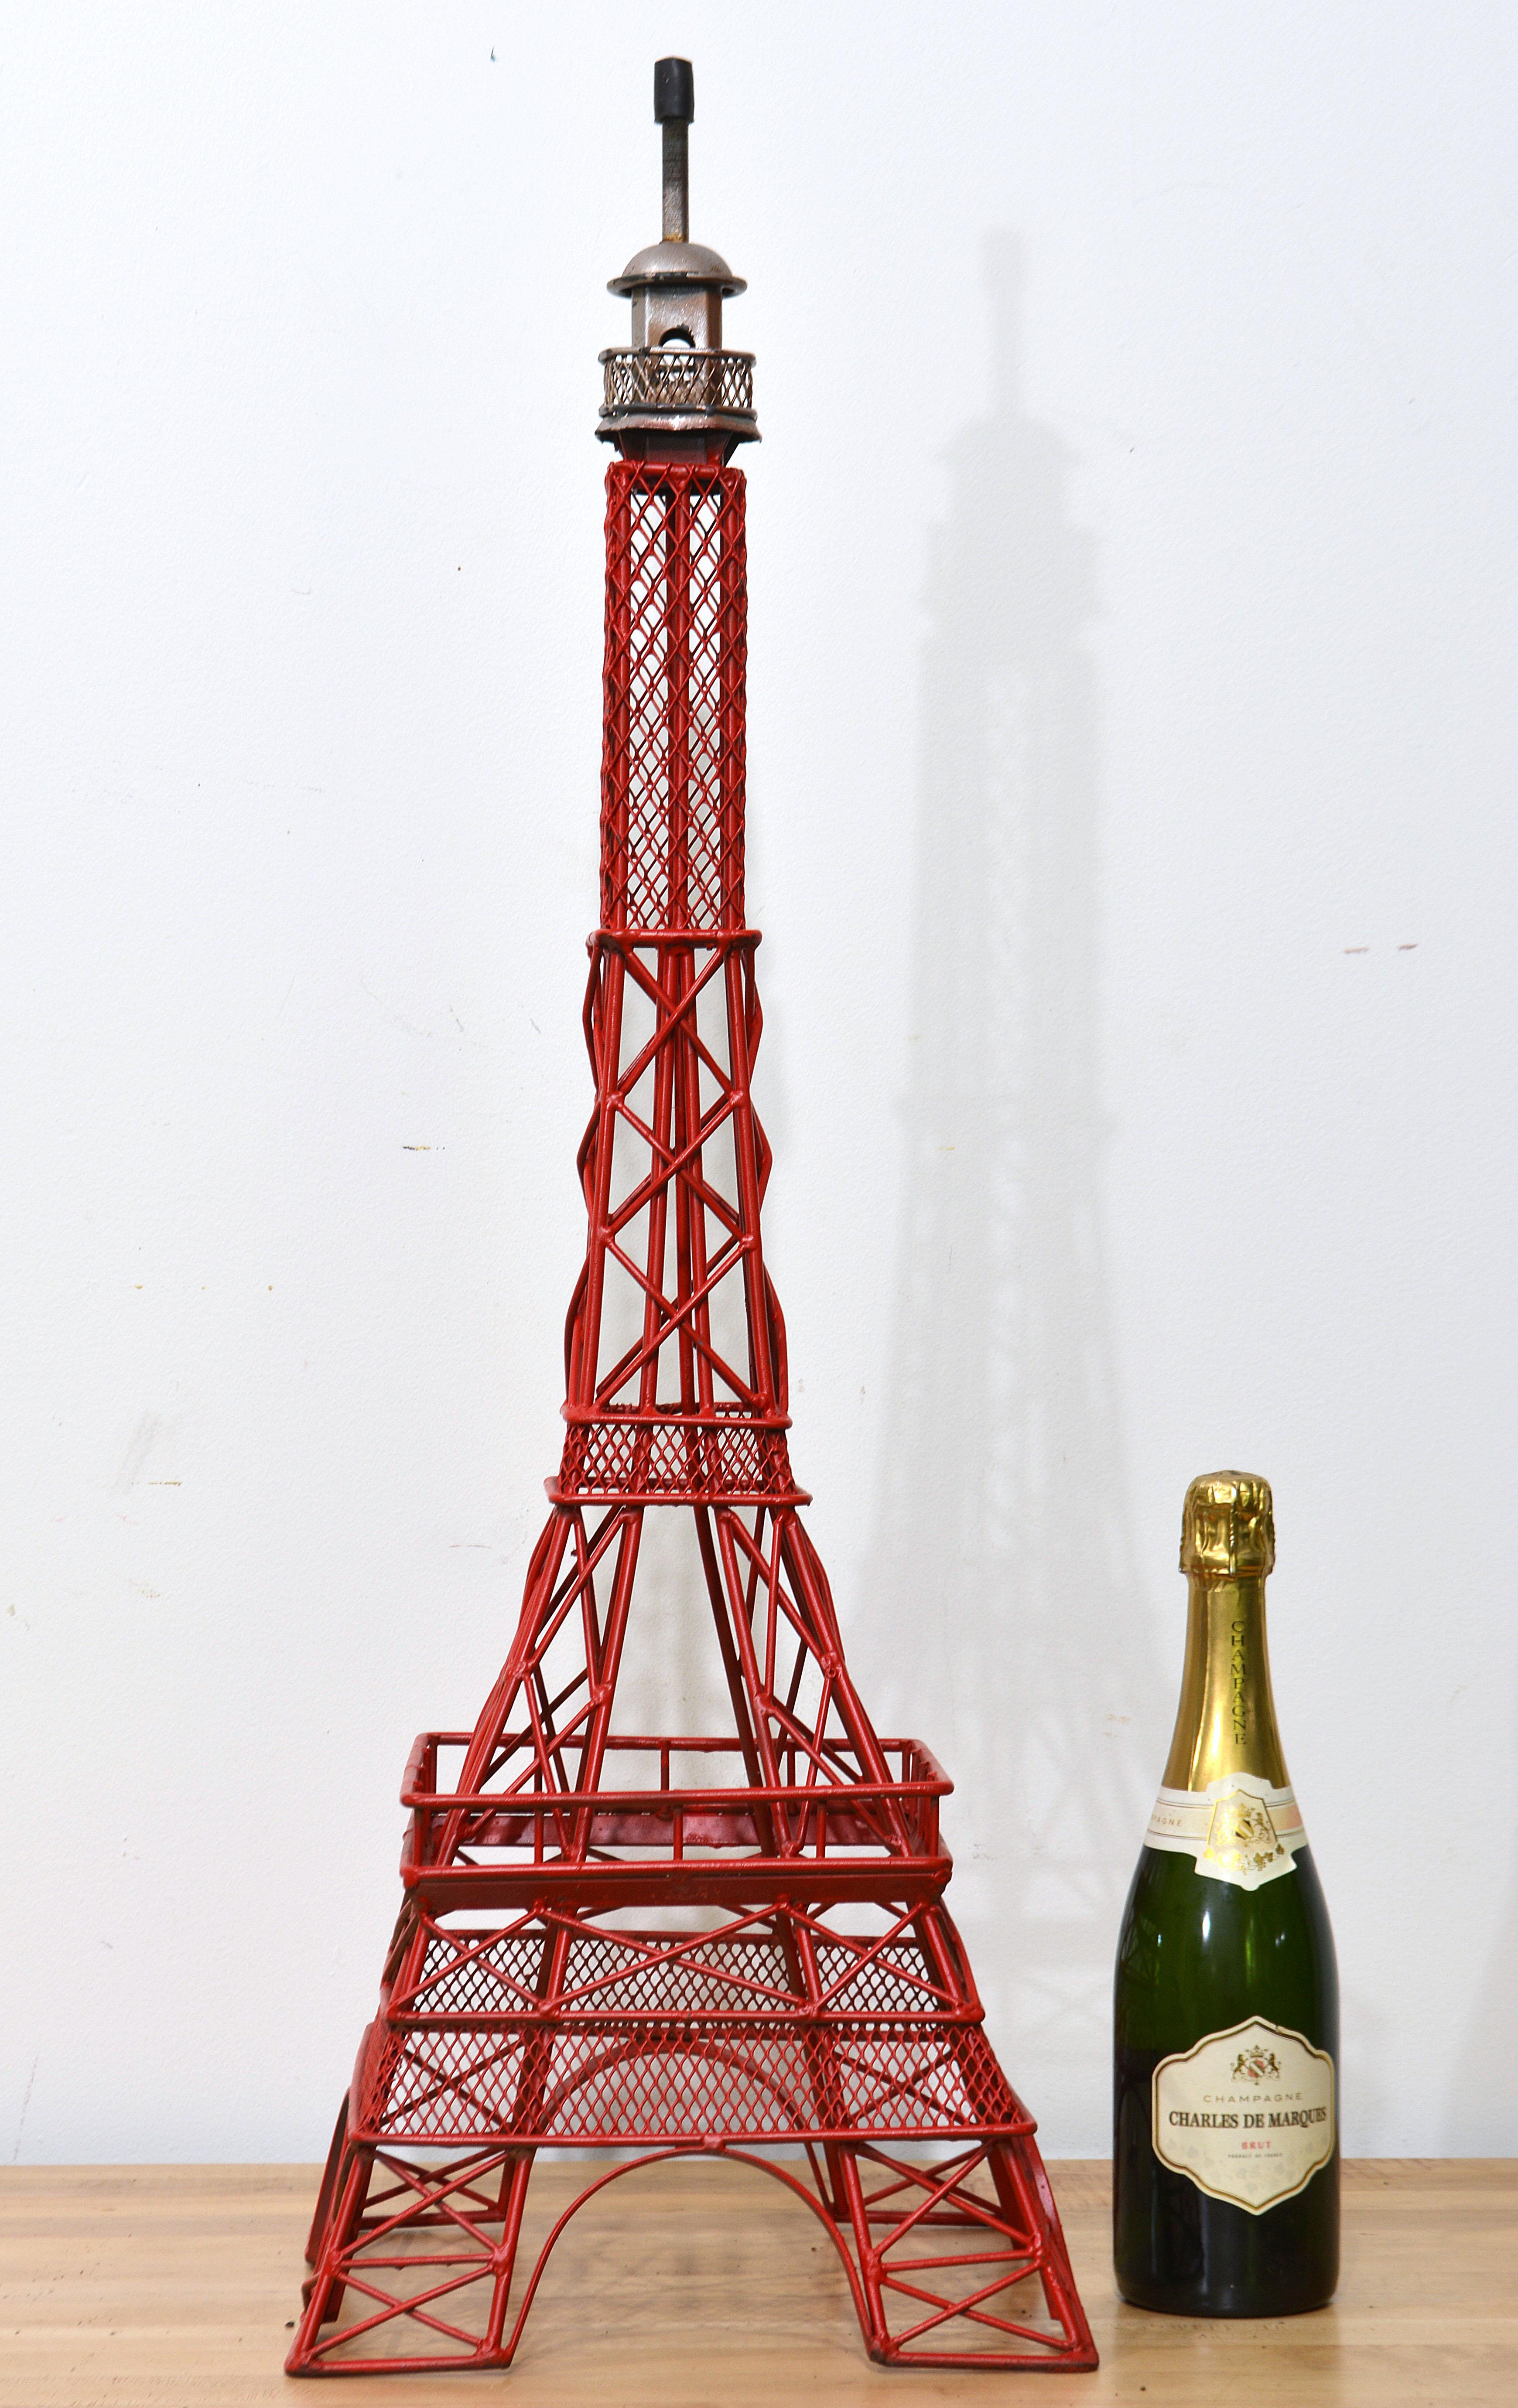 D'une hauteur de 34,5 pouces, cette magnifique sculpture architecturale inspirée de la Tour Eifel fait forte impression. Un système complexe de barres d'acier soudées diagonales et droites s'élève jusqu'au petit pavillon octogonal en forme de dôme